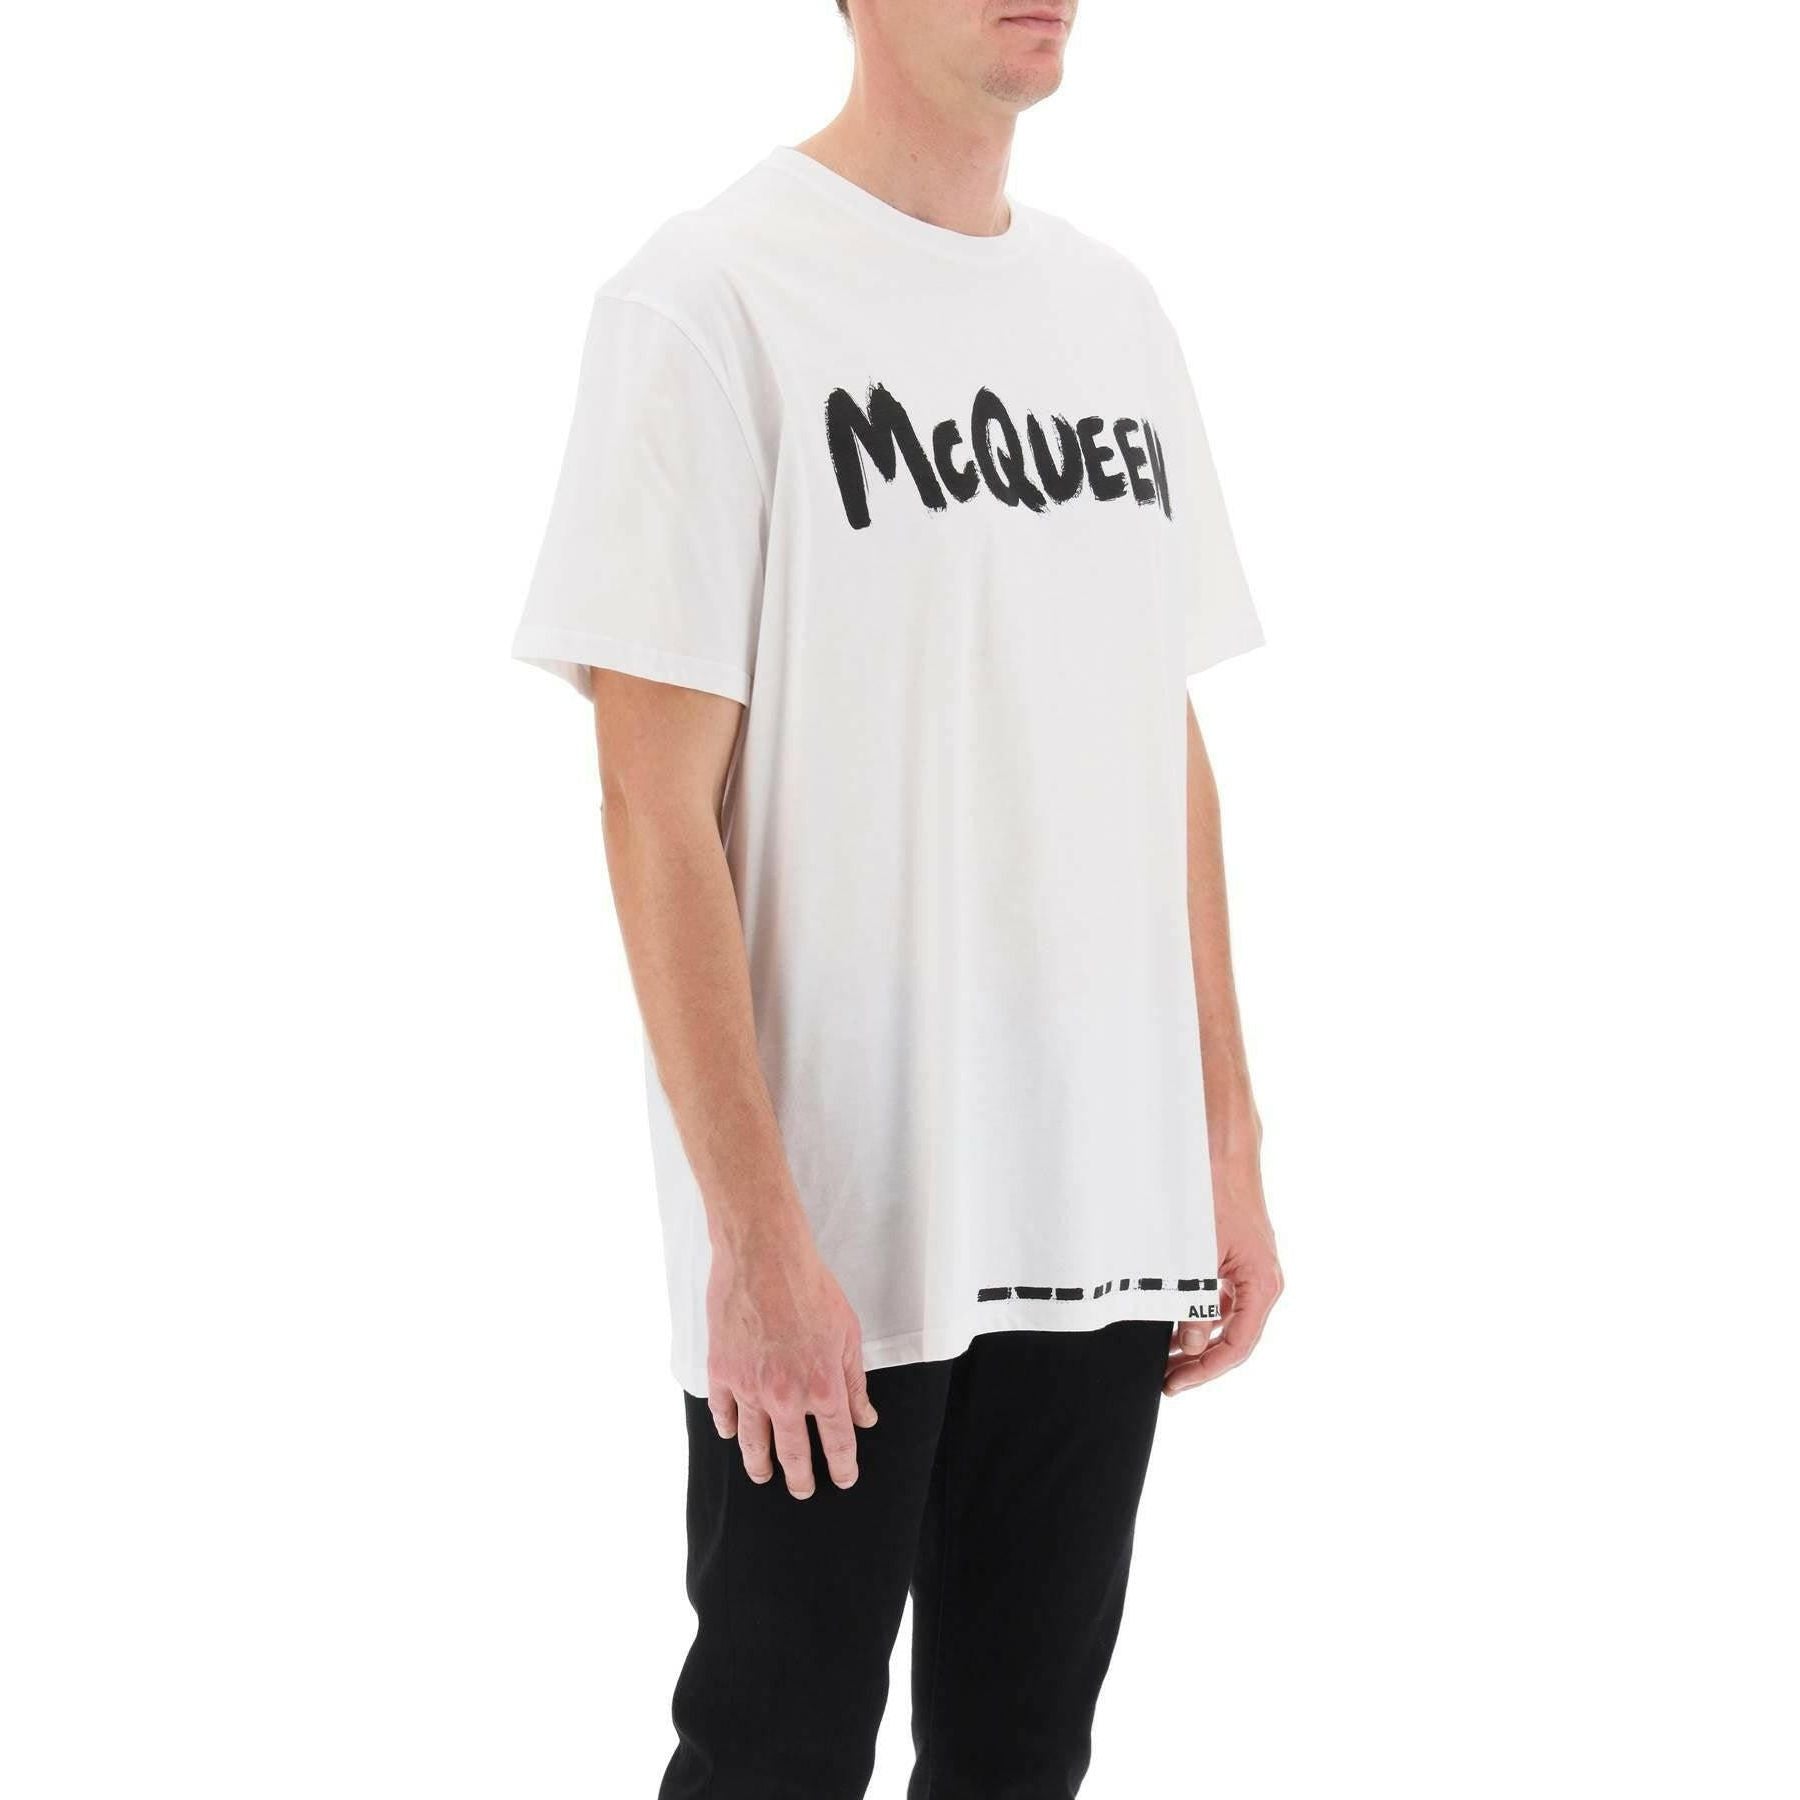 McQueen Graffiti T-Shirt ALEXANDER MCQUEEN JOHN JULIA.